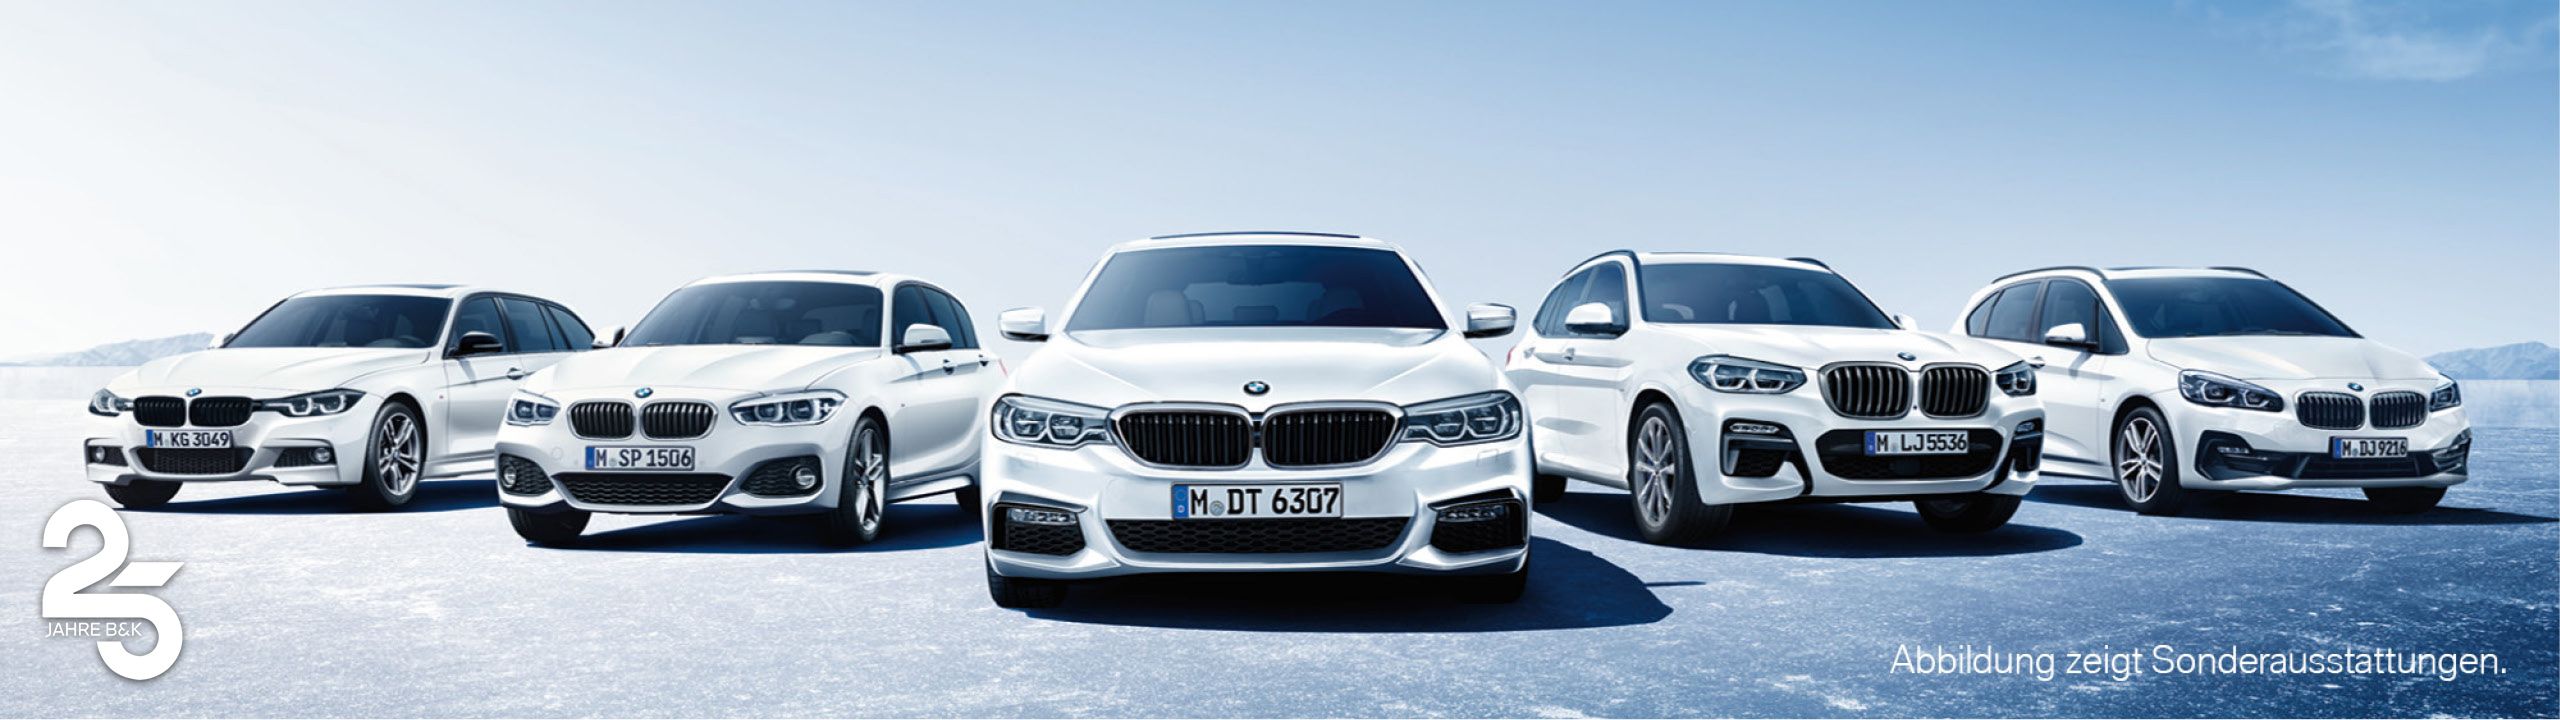 Flotte weißer BMW Leasingfahrzeuge vor blauem Hintergrund